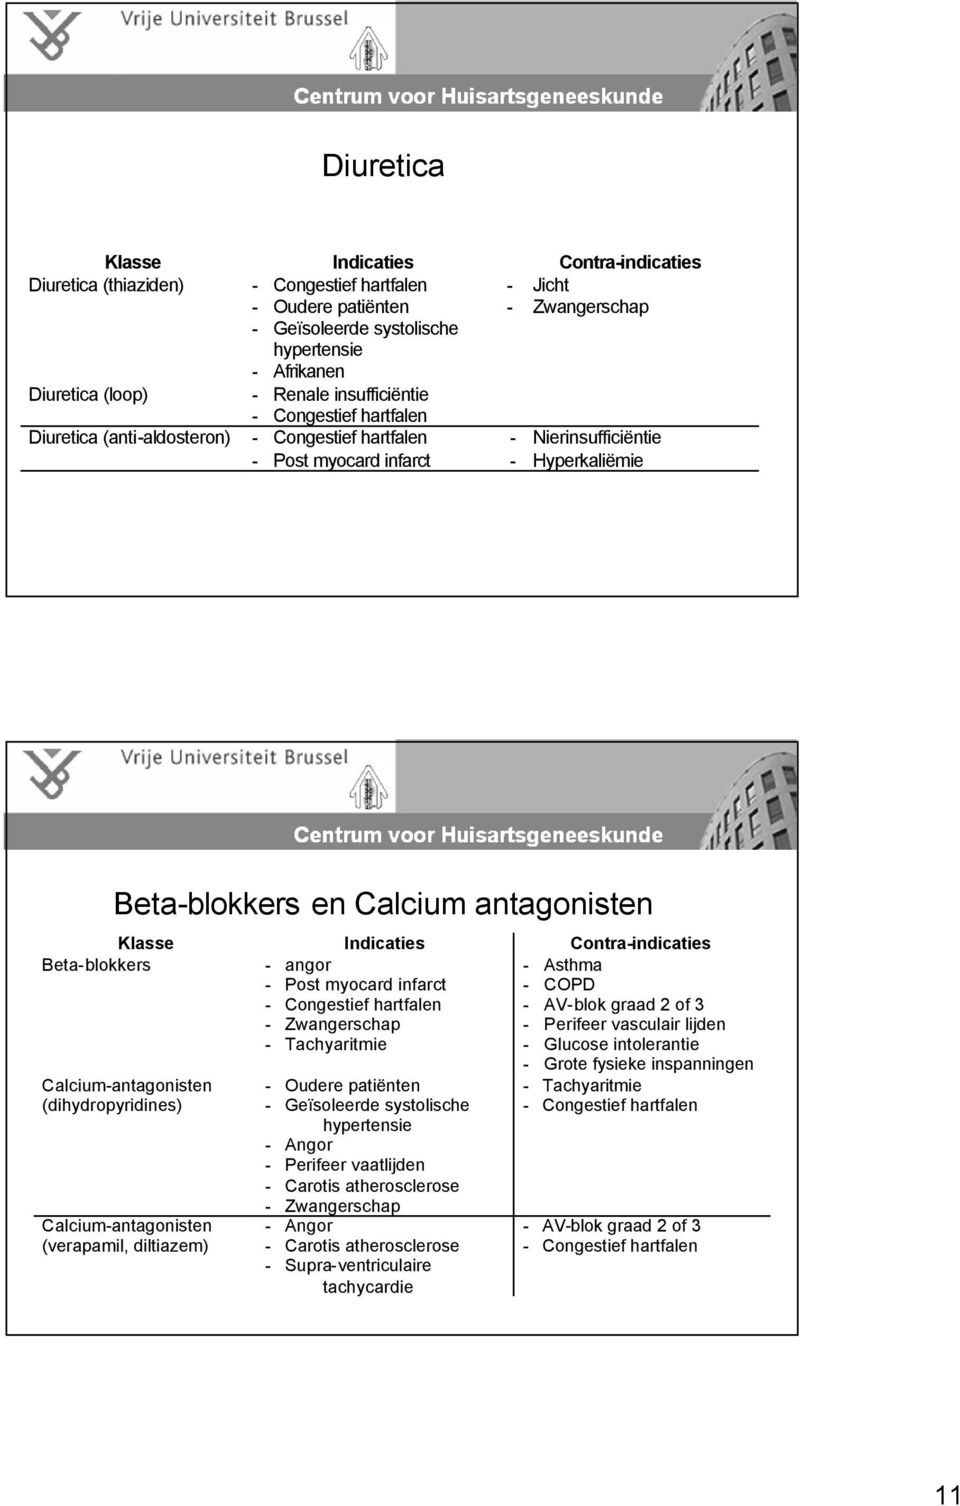 Beta-blokkers en Calcium antagonisten Klasse Indicaties Contra-indicaties Beta-blokkers - angor - Post myocard infarct - Congestief hartfalen - Zwangerschap - Tachyaritmie - Asthma - COPD - AV-blok